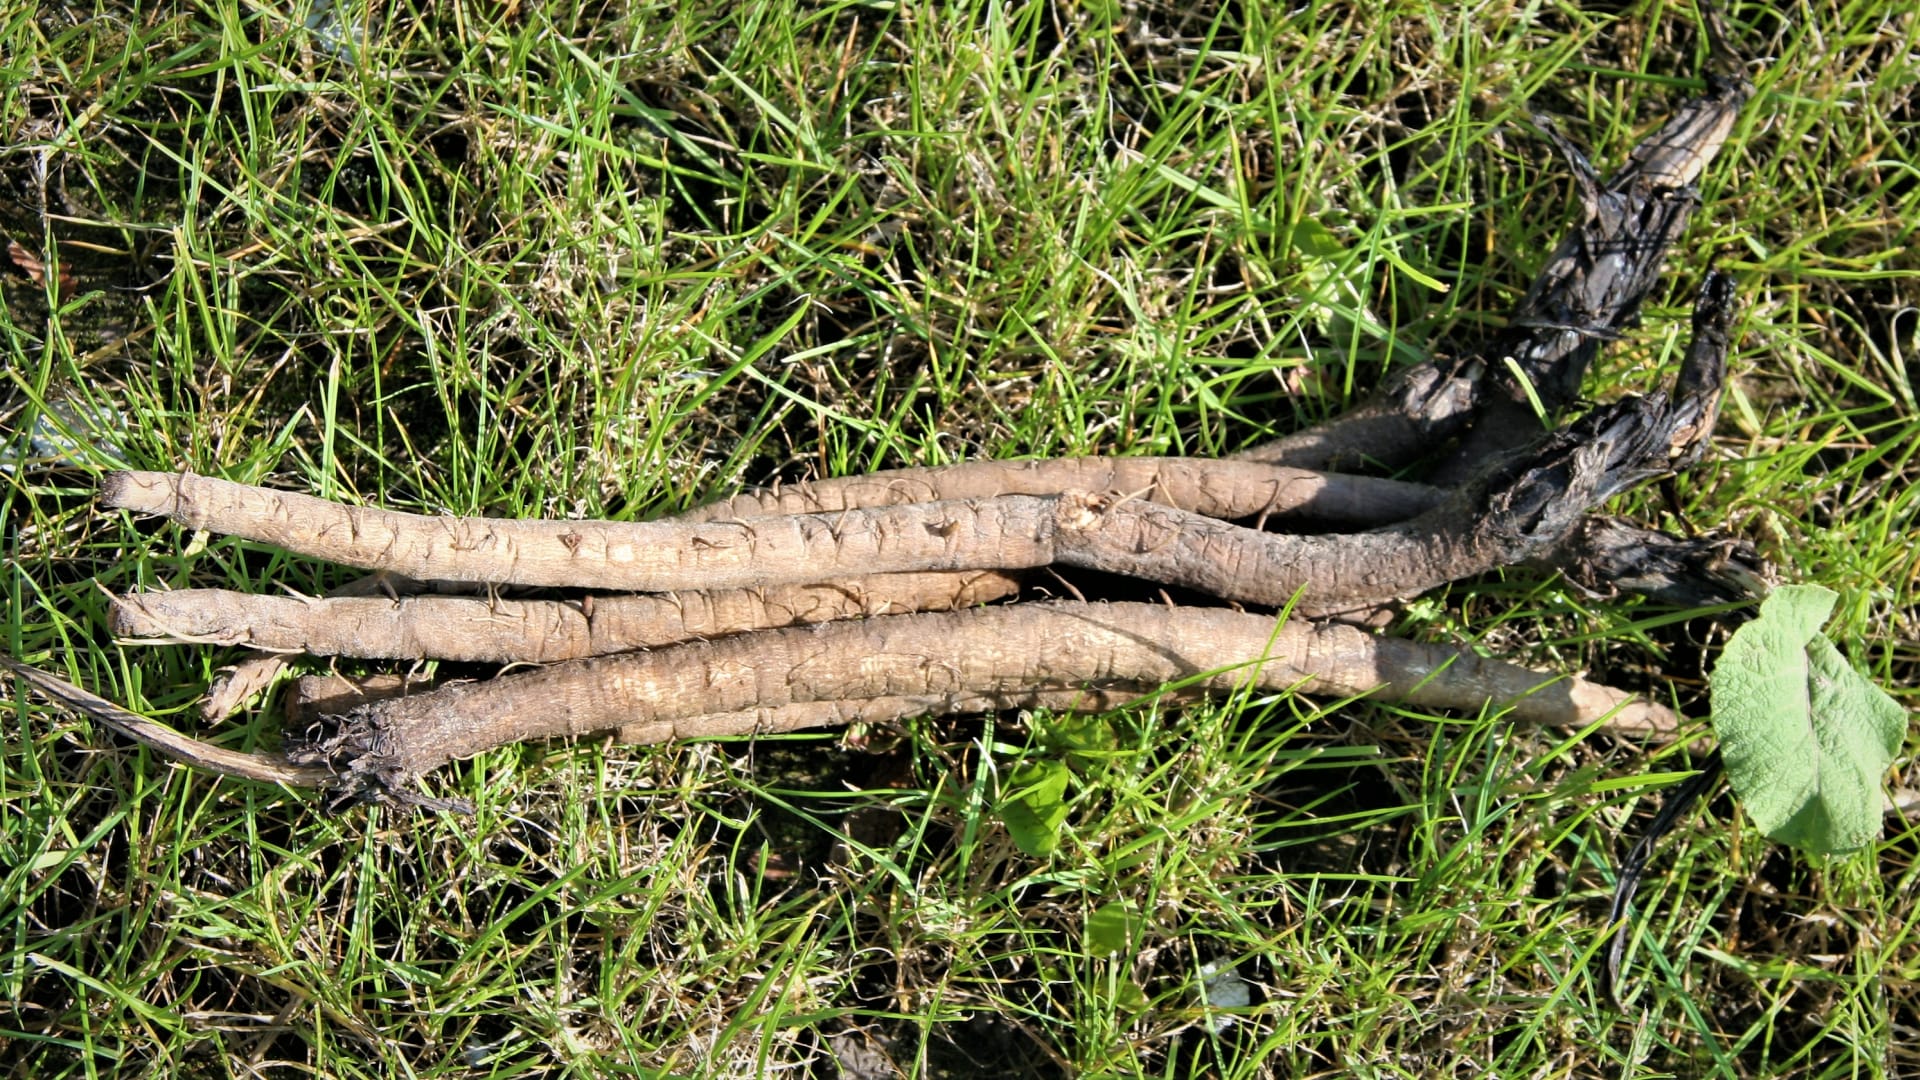 Černý kořen: při vyrývání dlouhých štíhlých kořenů postupujeme opatrně, často se lámou a tím i znehodnocují